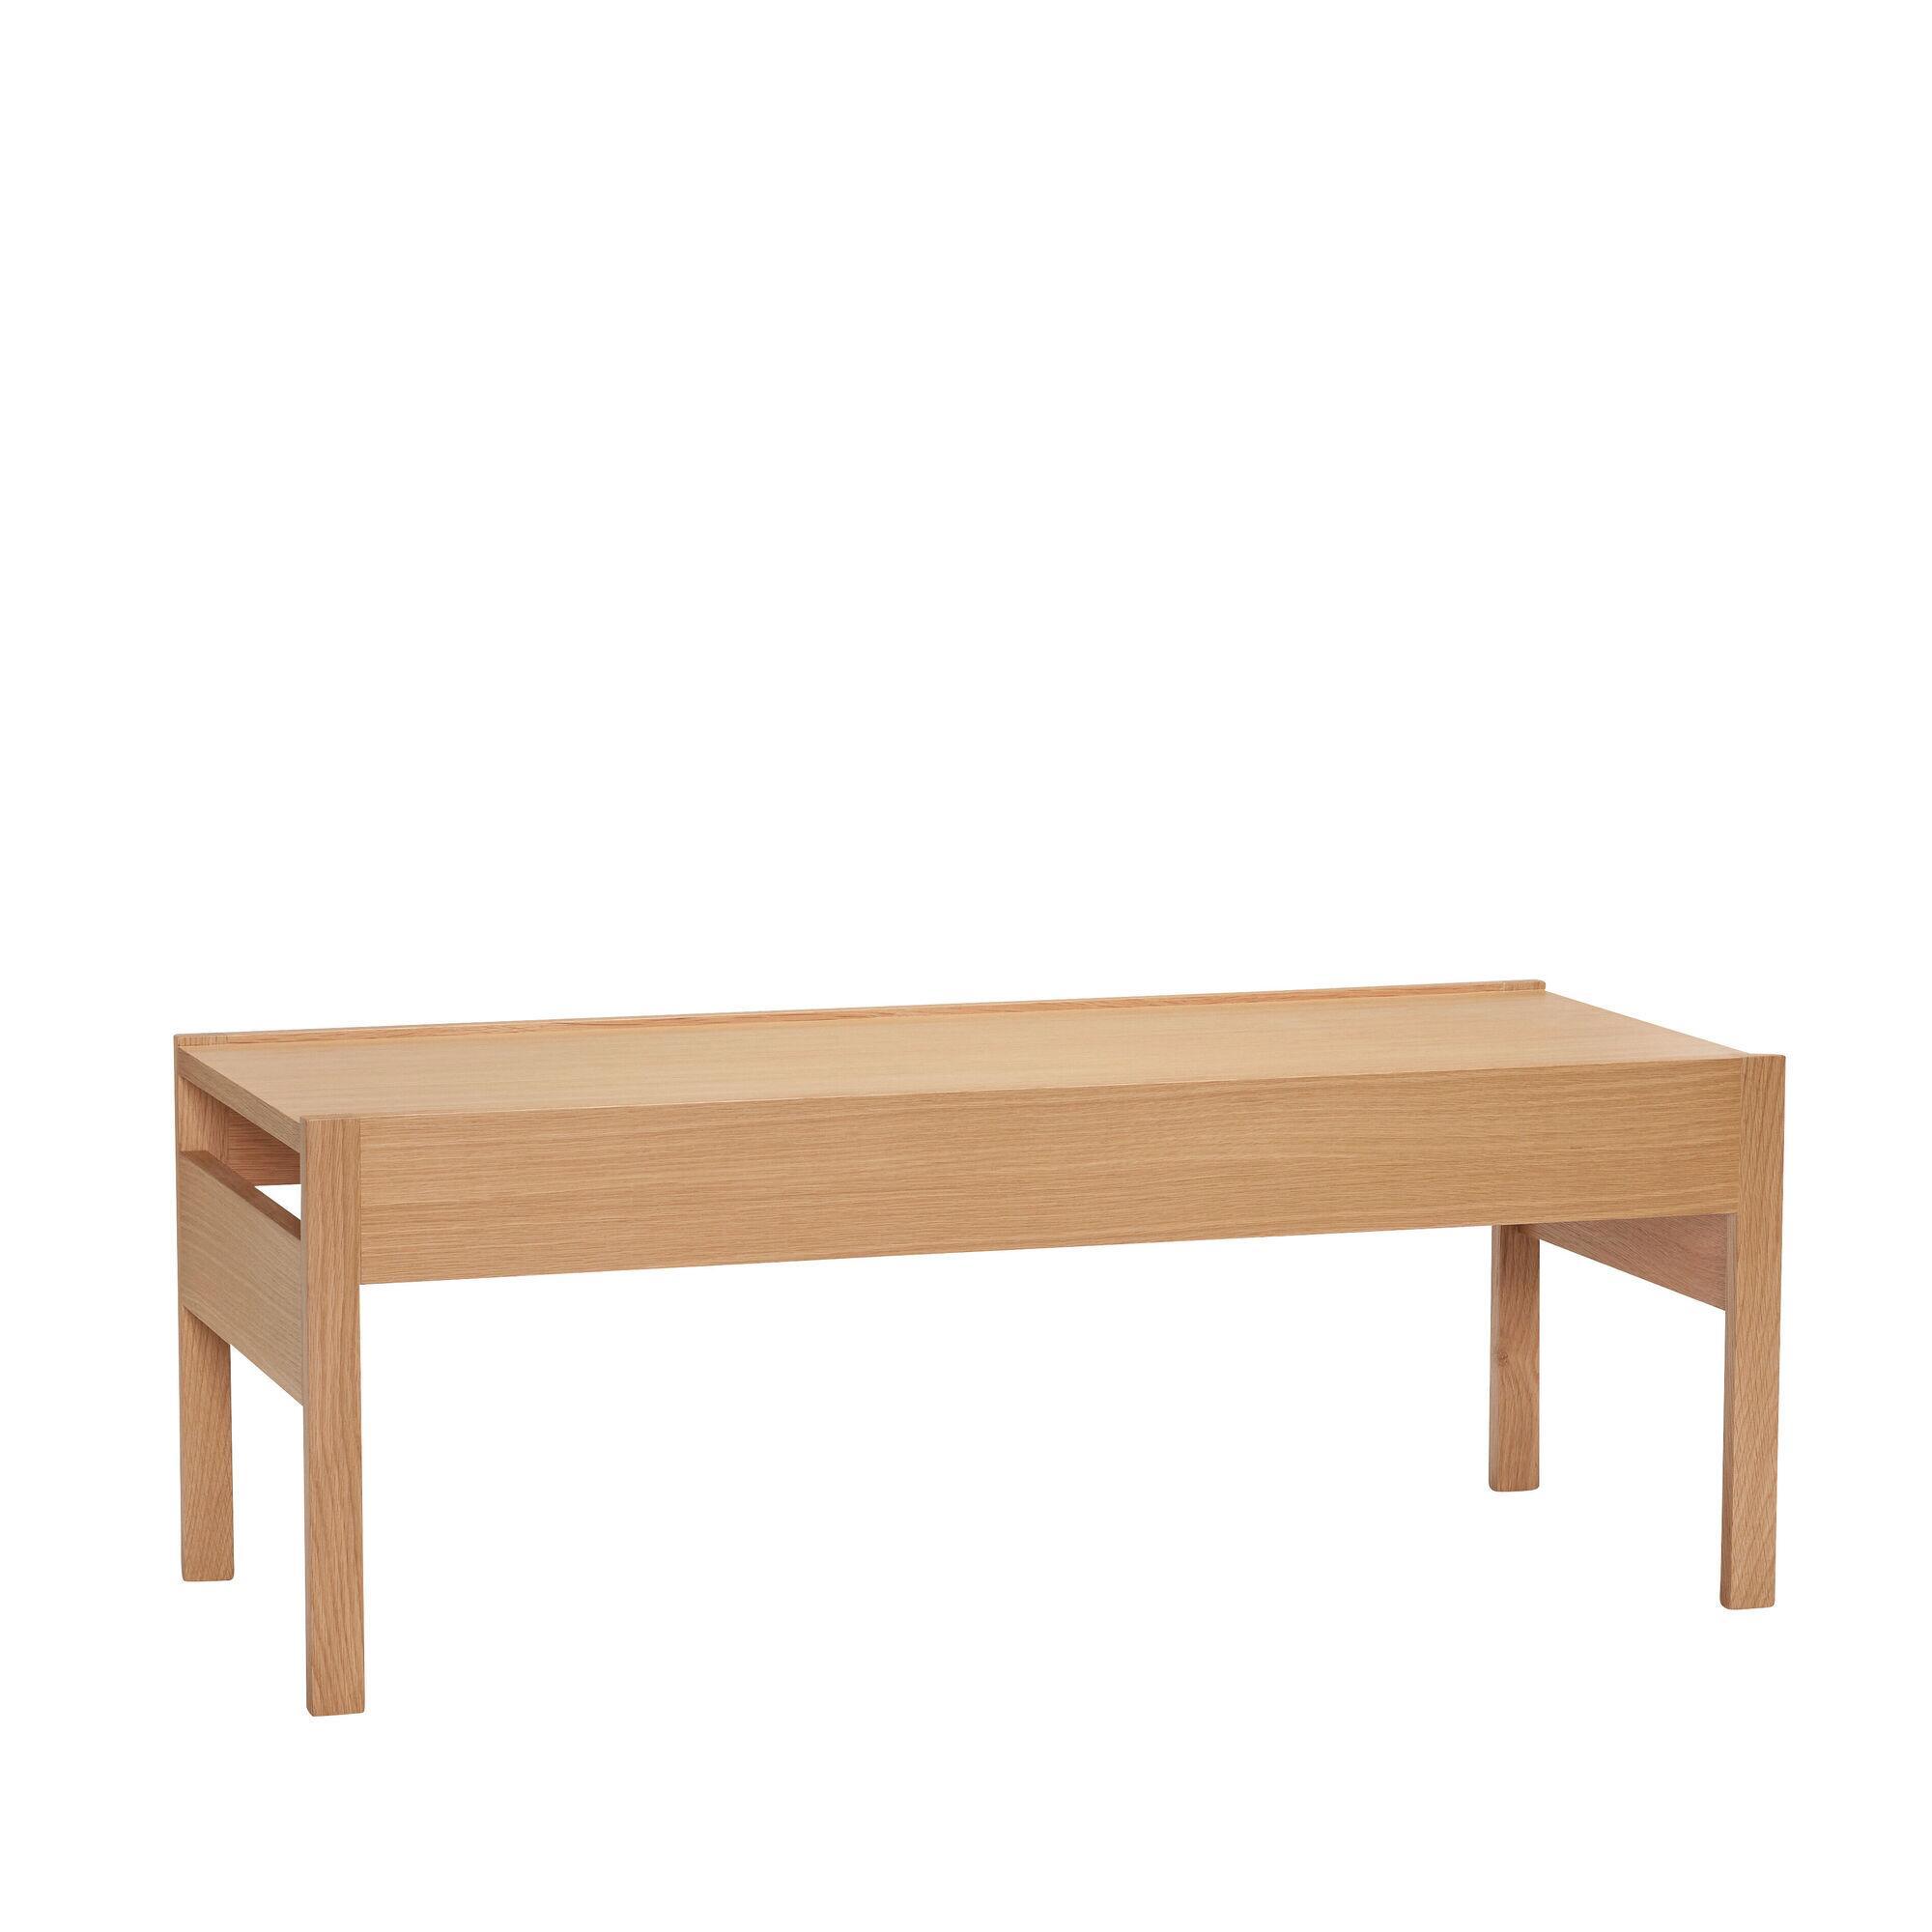  Forma Sofabord - Natur fra Hübsch Interiør i MDF, Egetræsfiner, Egetræ (Varenr: 881909)